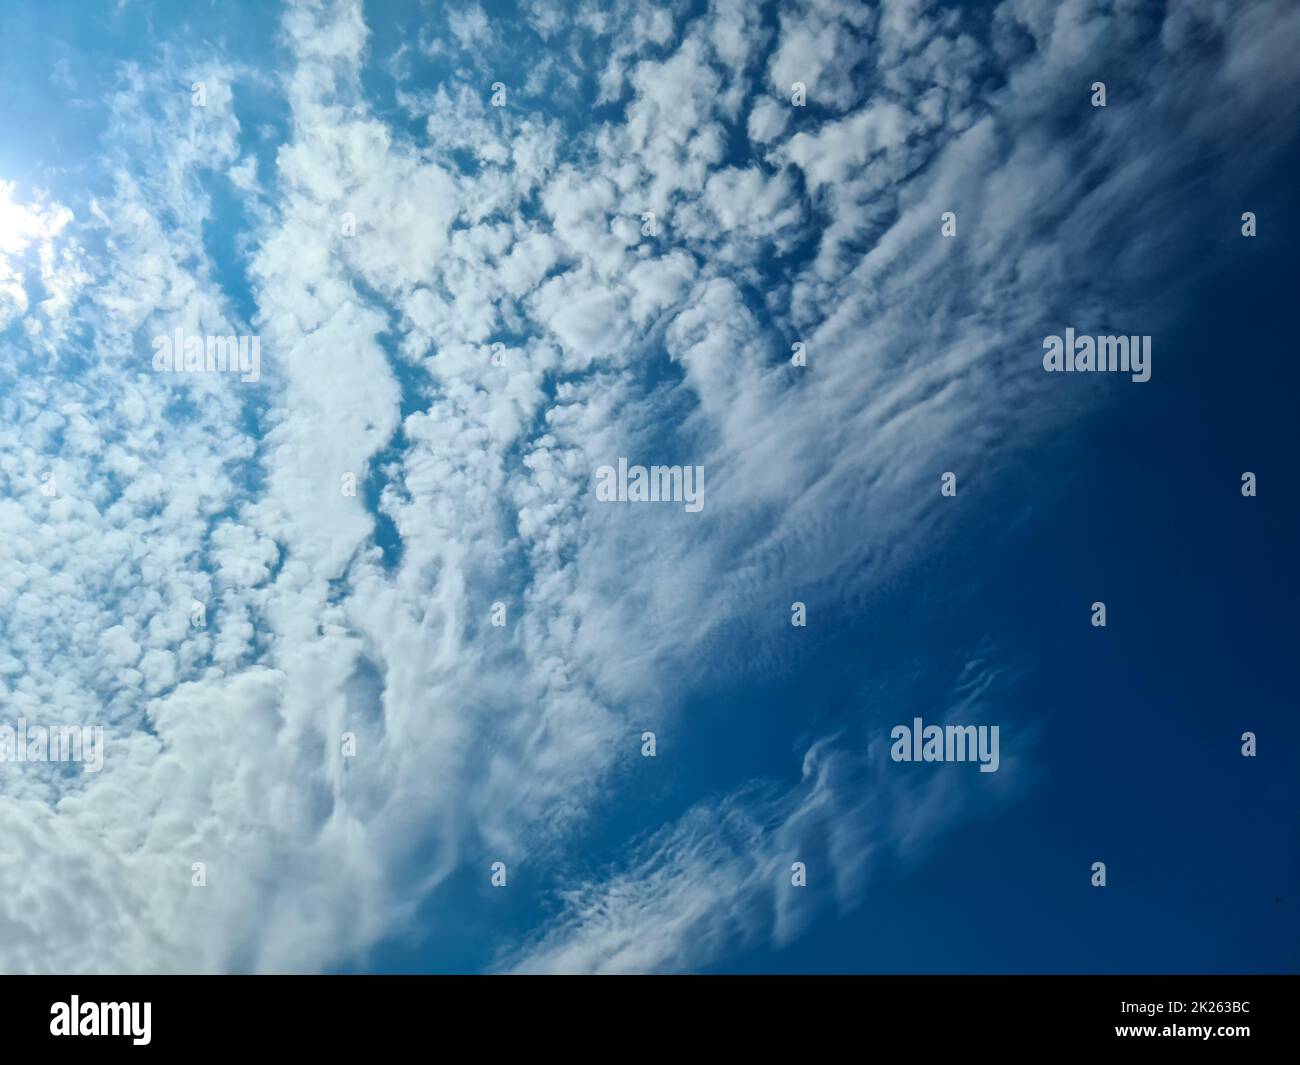 Wunderschöner Blick auf die Sonnenstrahlen mit einigen Lichtreflexionen und Wolken in einem blauen Himmel Stockfoto